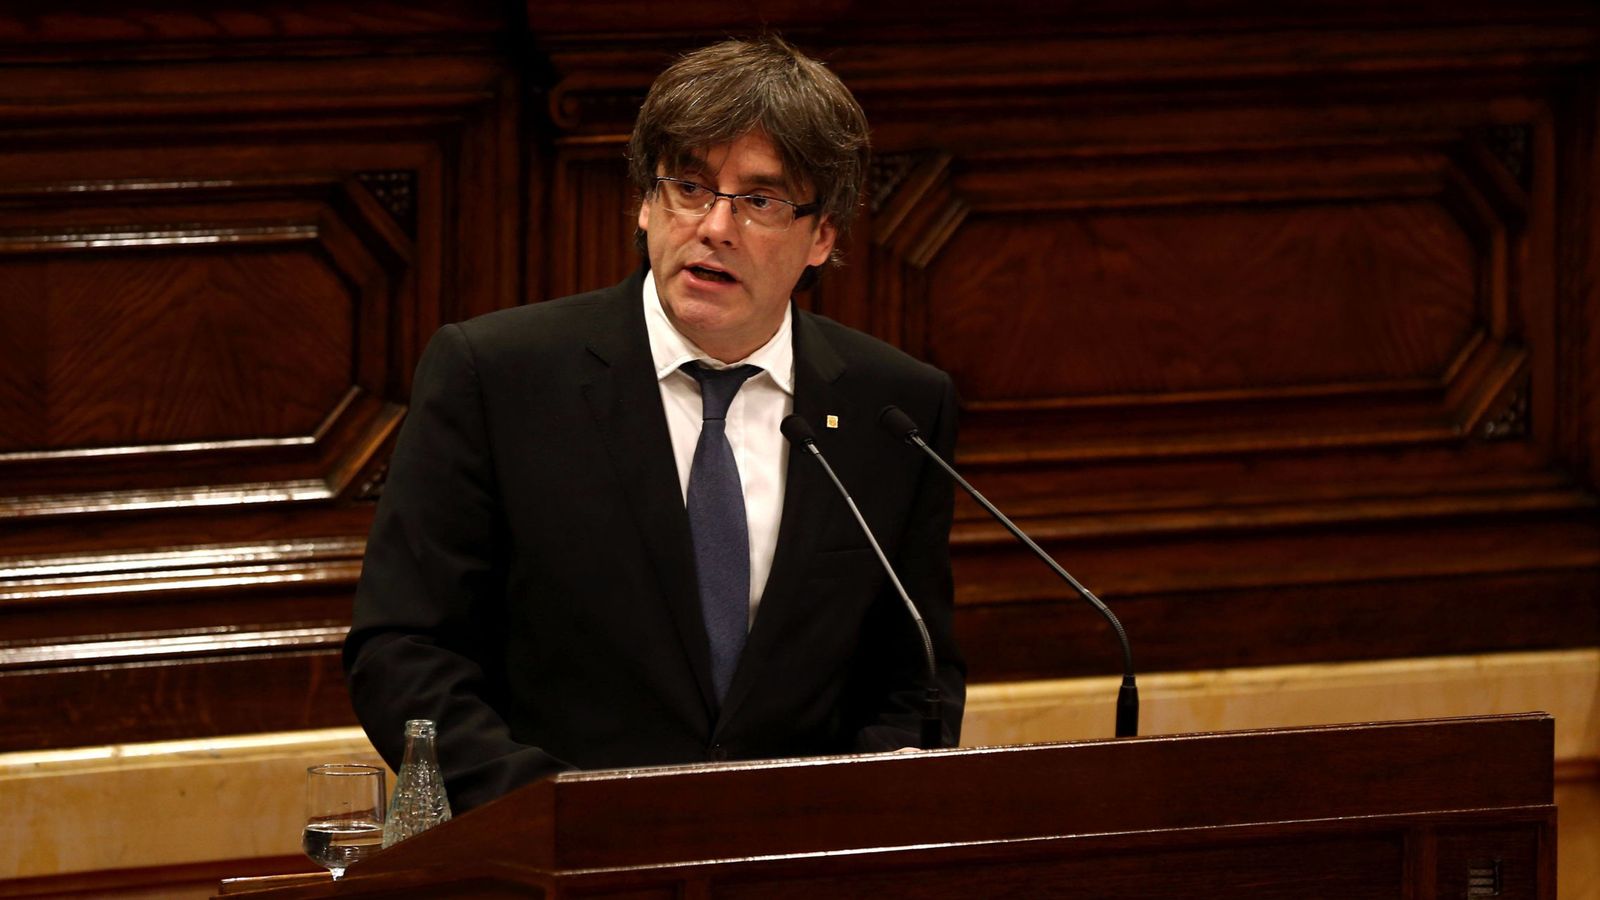 Foto: El presidente de la Generalitat, Carles Puigdemont. (EFE)